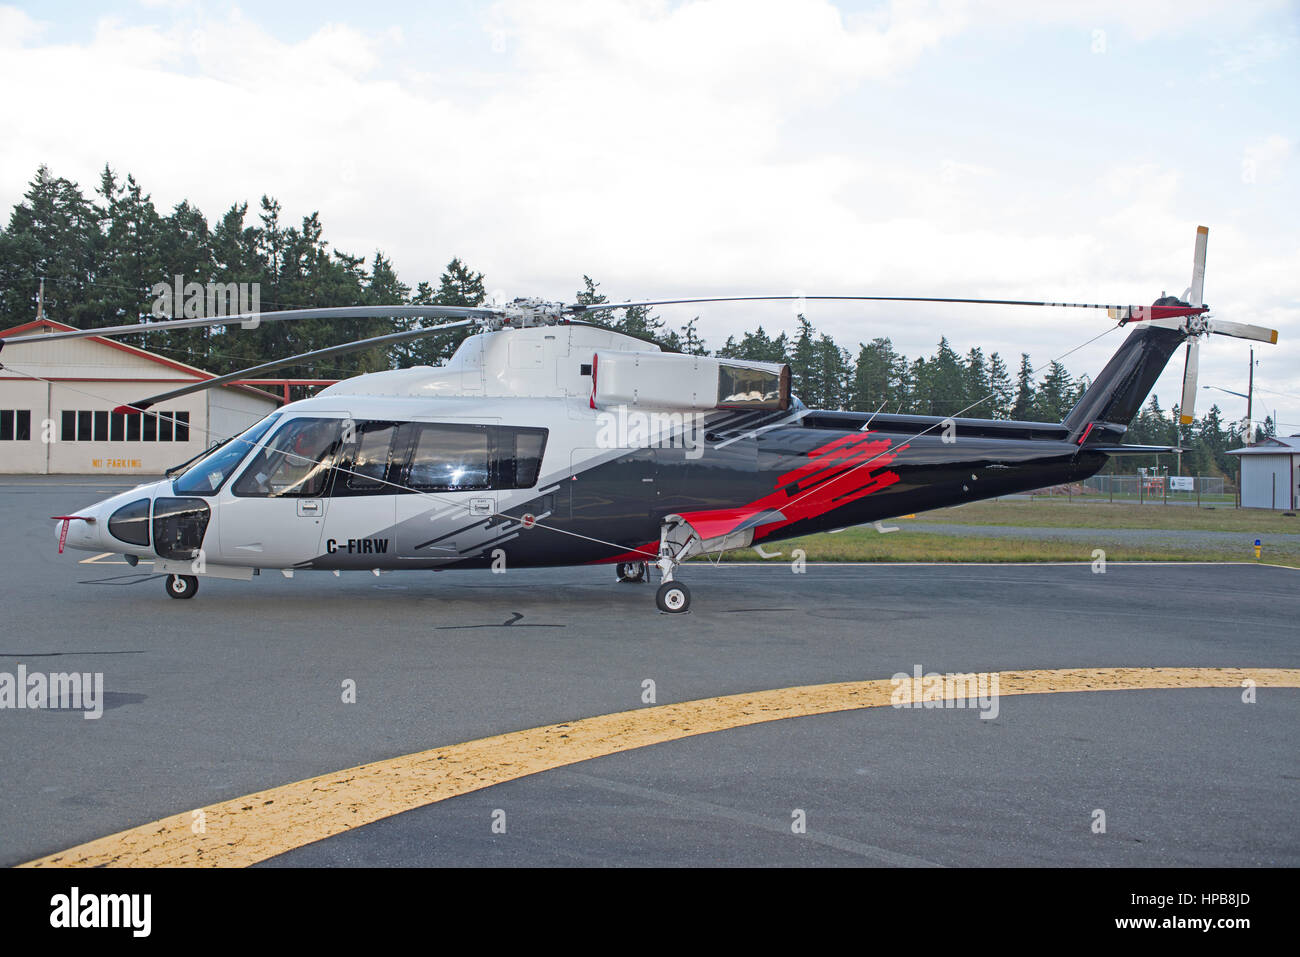 Sikorsky S-76B est arrivé à l'aérodrome de Qualicum sur l'île de Vancouver de l'aéroport de Vancouver en Colombie-Britannique, Canada. Banque D'Images